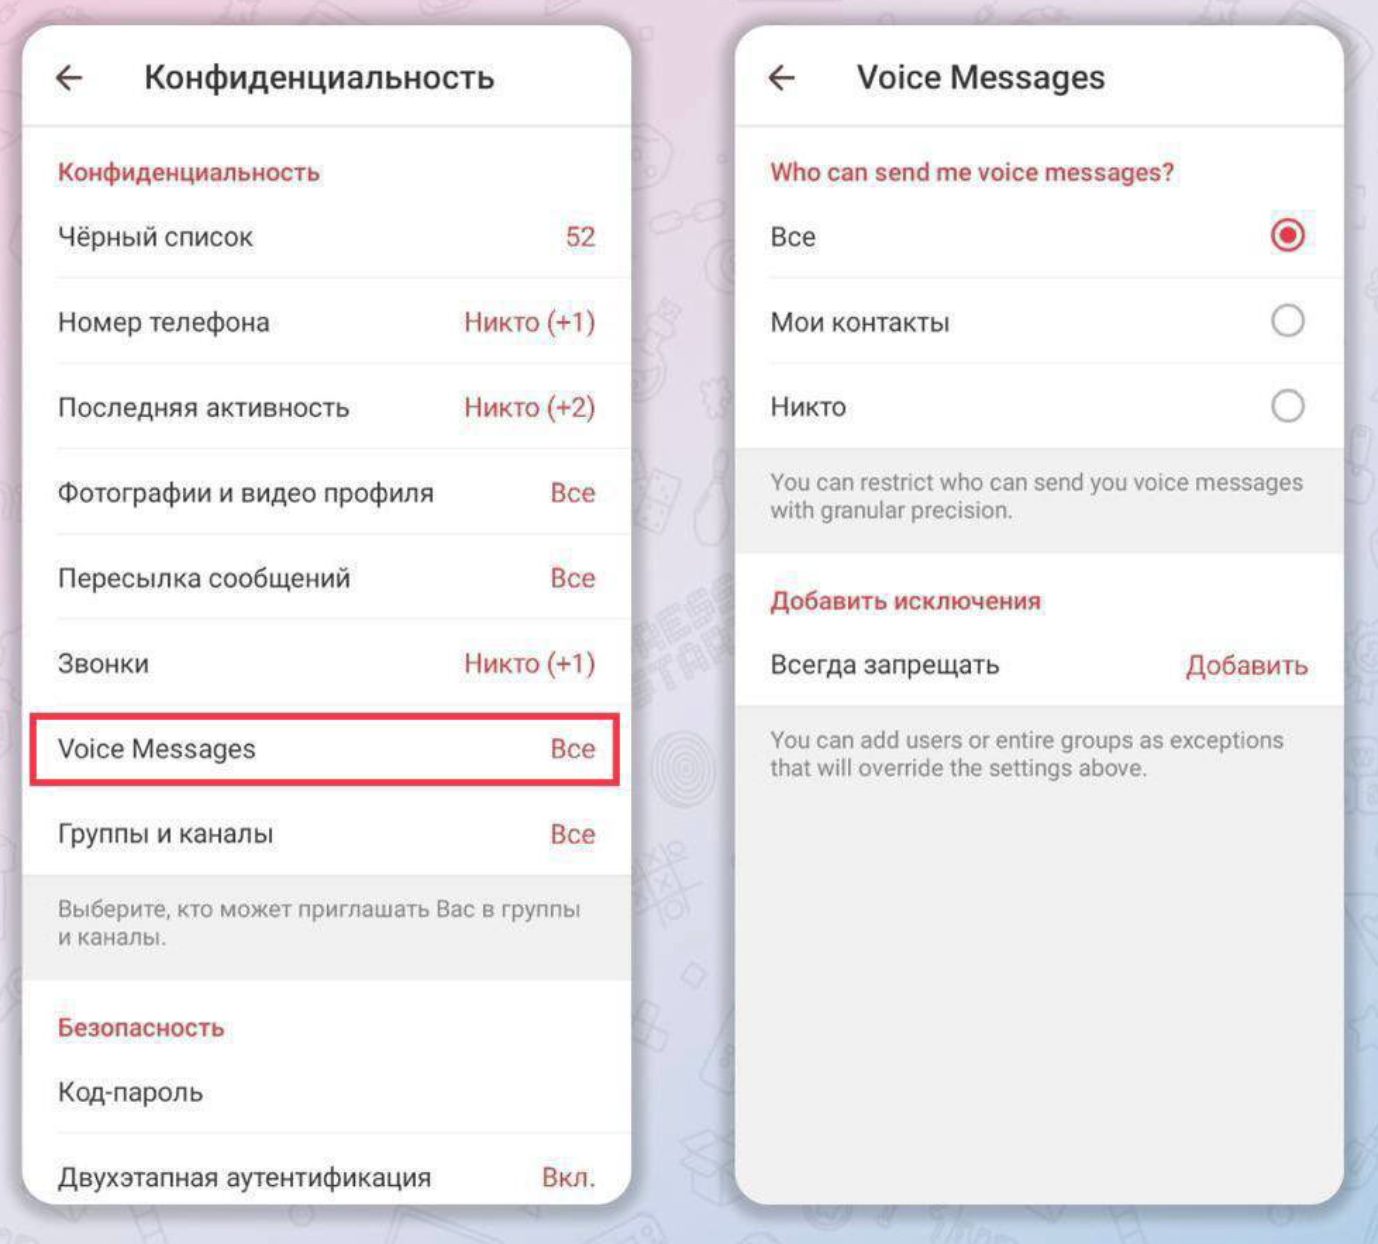 Как обновить телеграмм до последней версии на андроид бесплатно русском языке фото 110